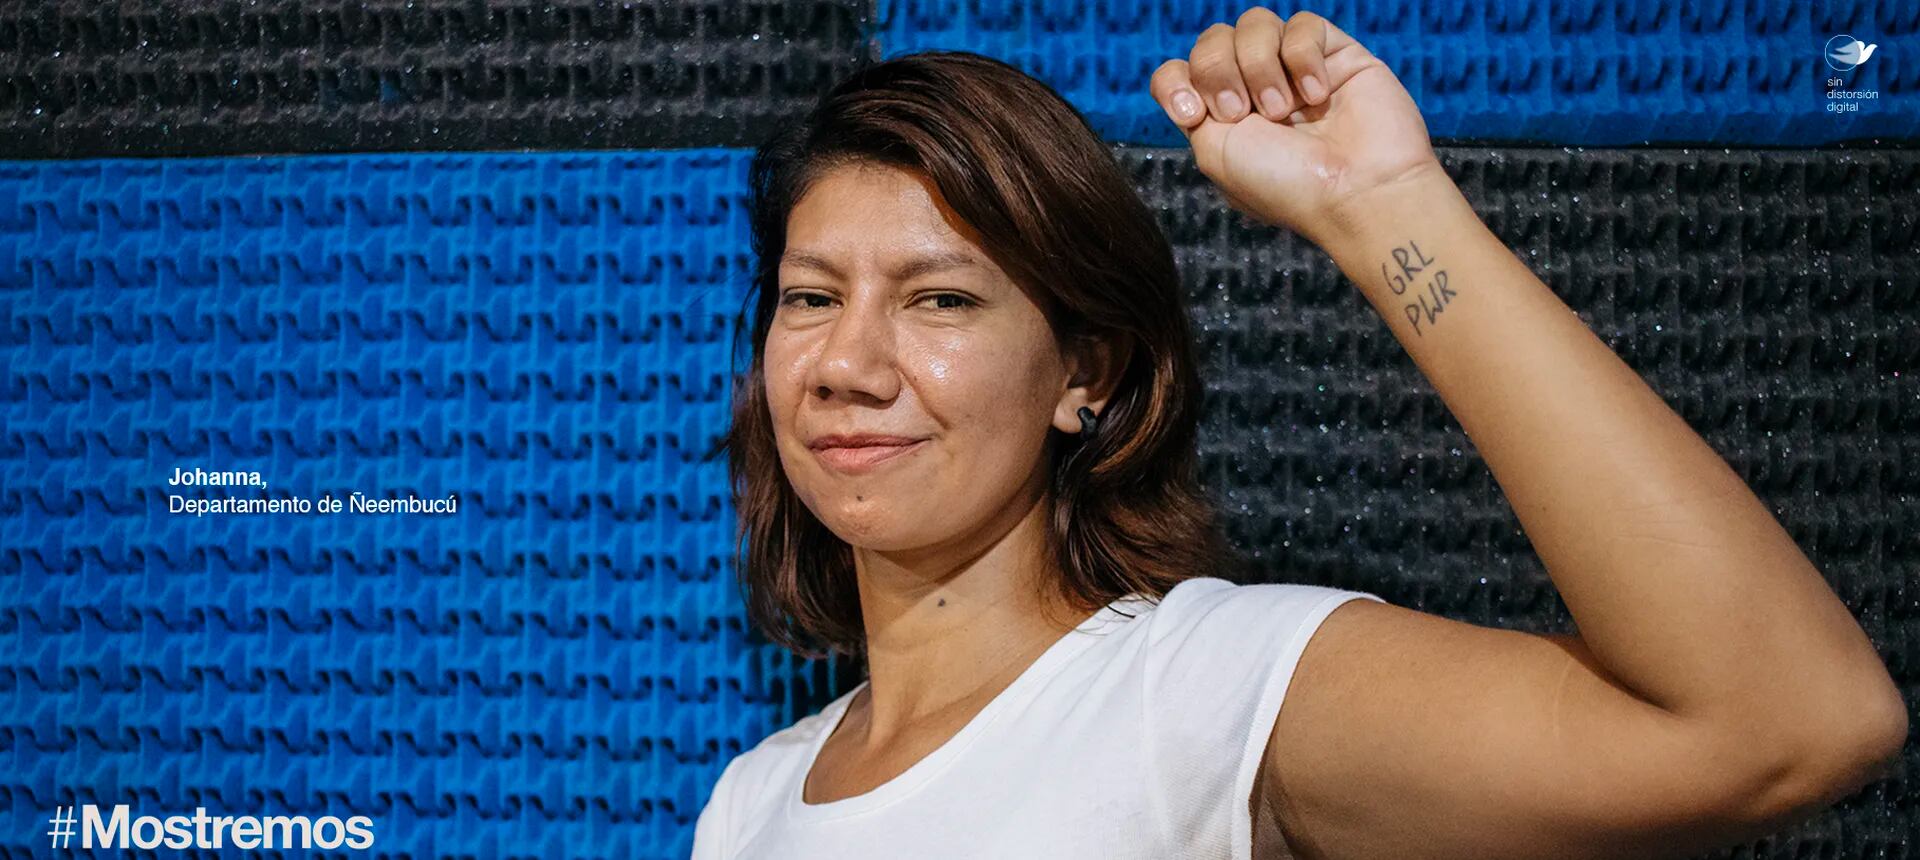 La "Mujer paraguaya" lucha por sus derechos. Johanna Sosa representa al departamento de Ñeembucú.